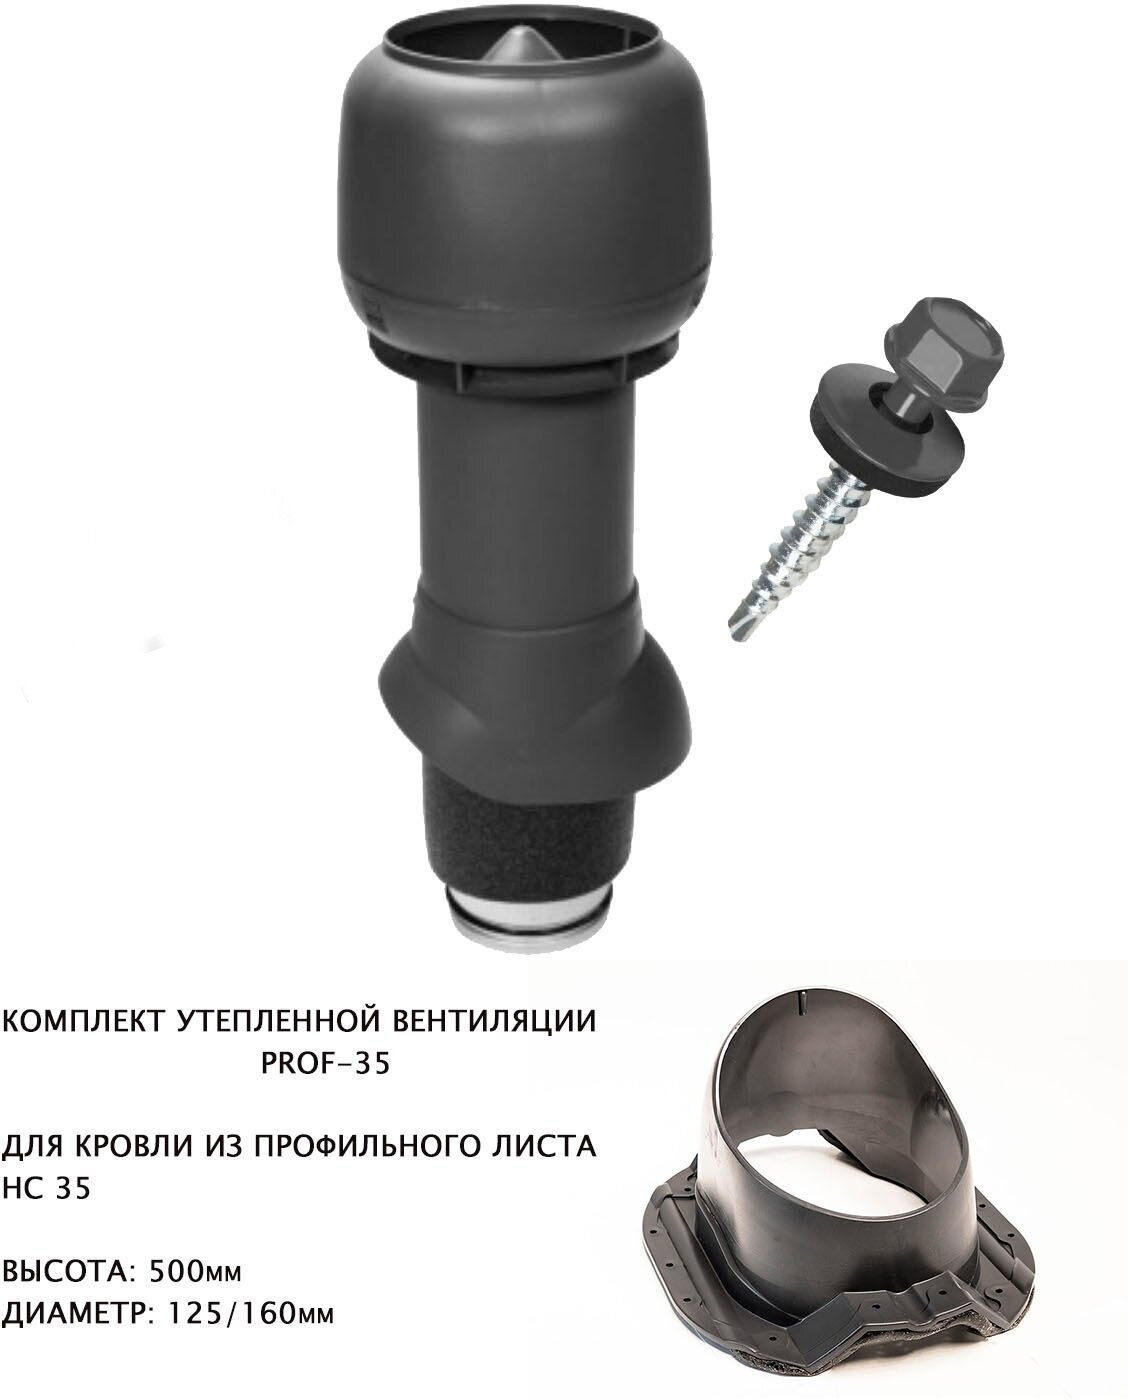 Комплект утепленной кровельной вентиляции поливент PROF-35 для металлопрофиля D125/160, H500, серый